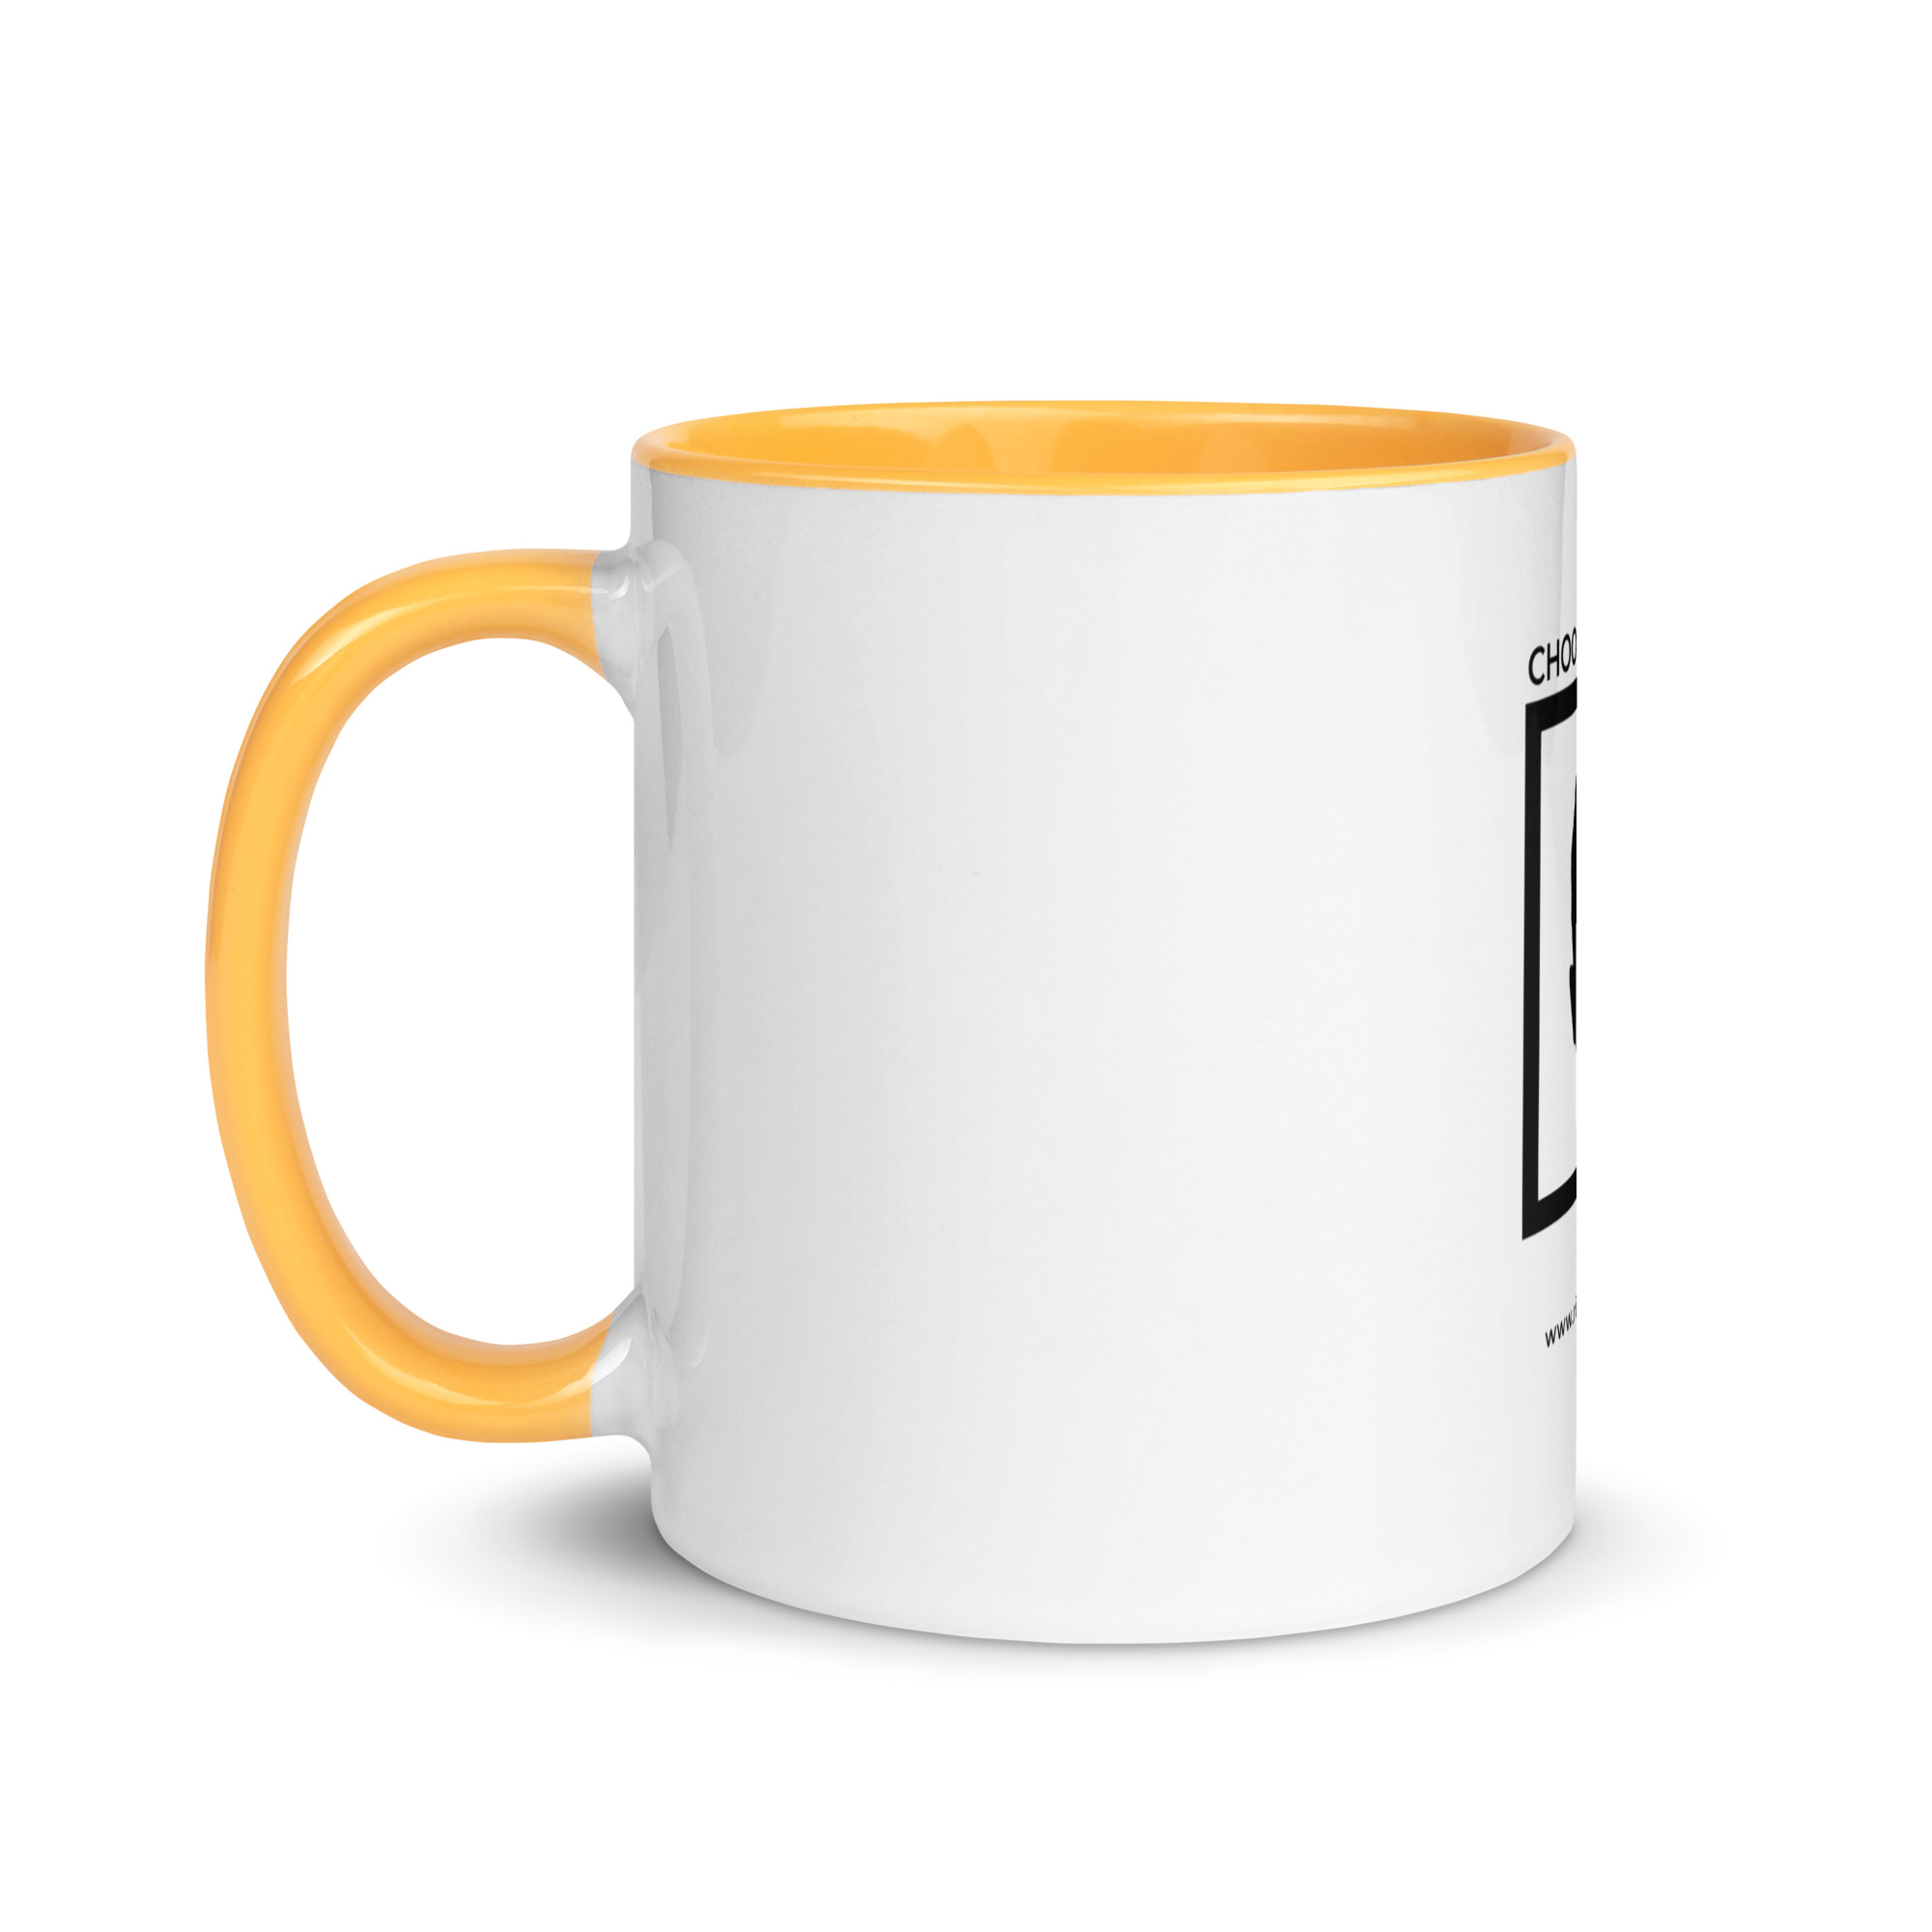 white-ceramic-mug-with-color-inside-golden-yellow-11-oz-left-6522a1a4043a5.jpg